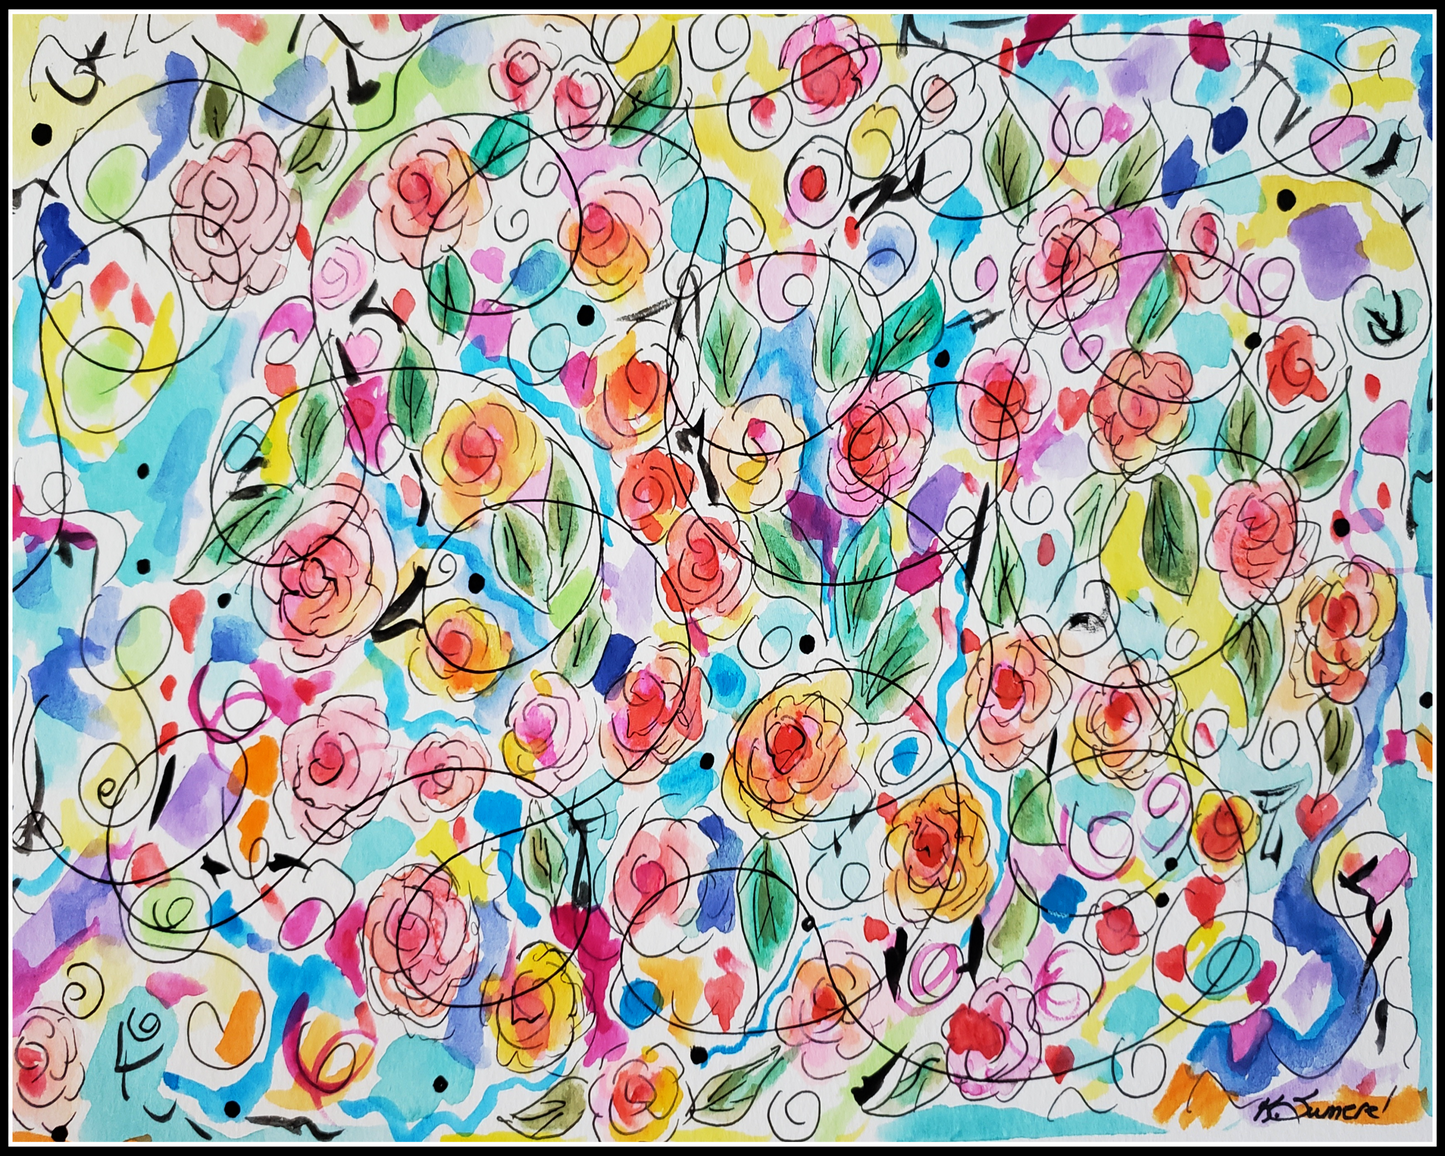 "Floweringl" Art Print